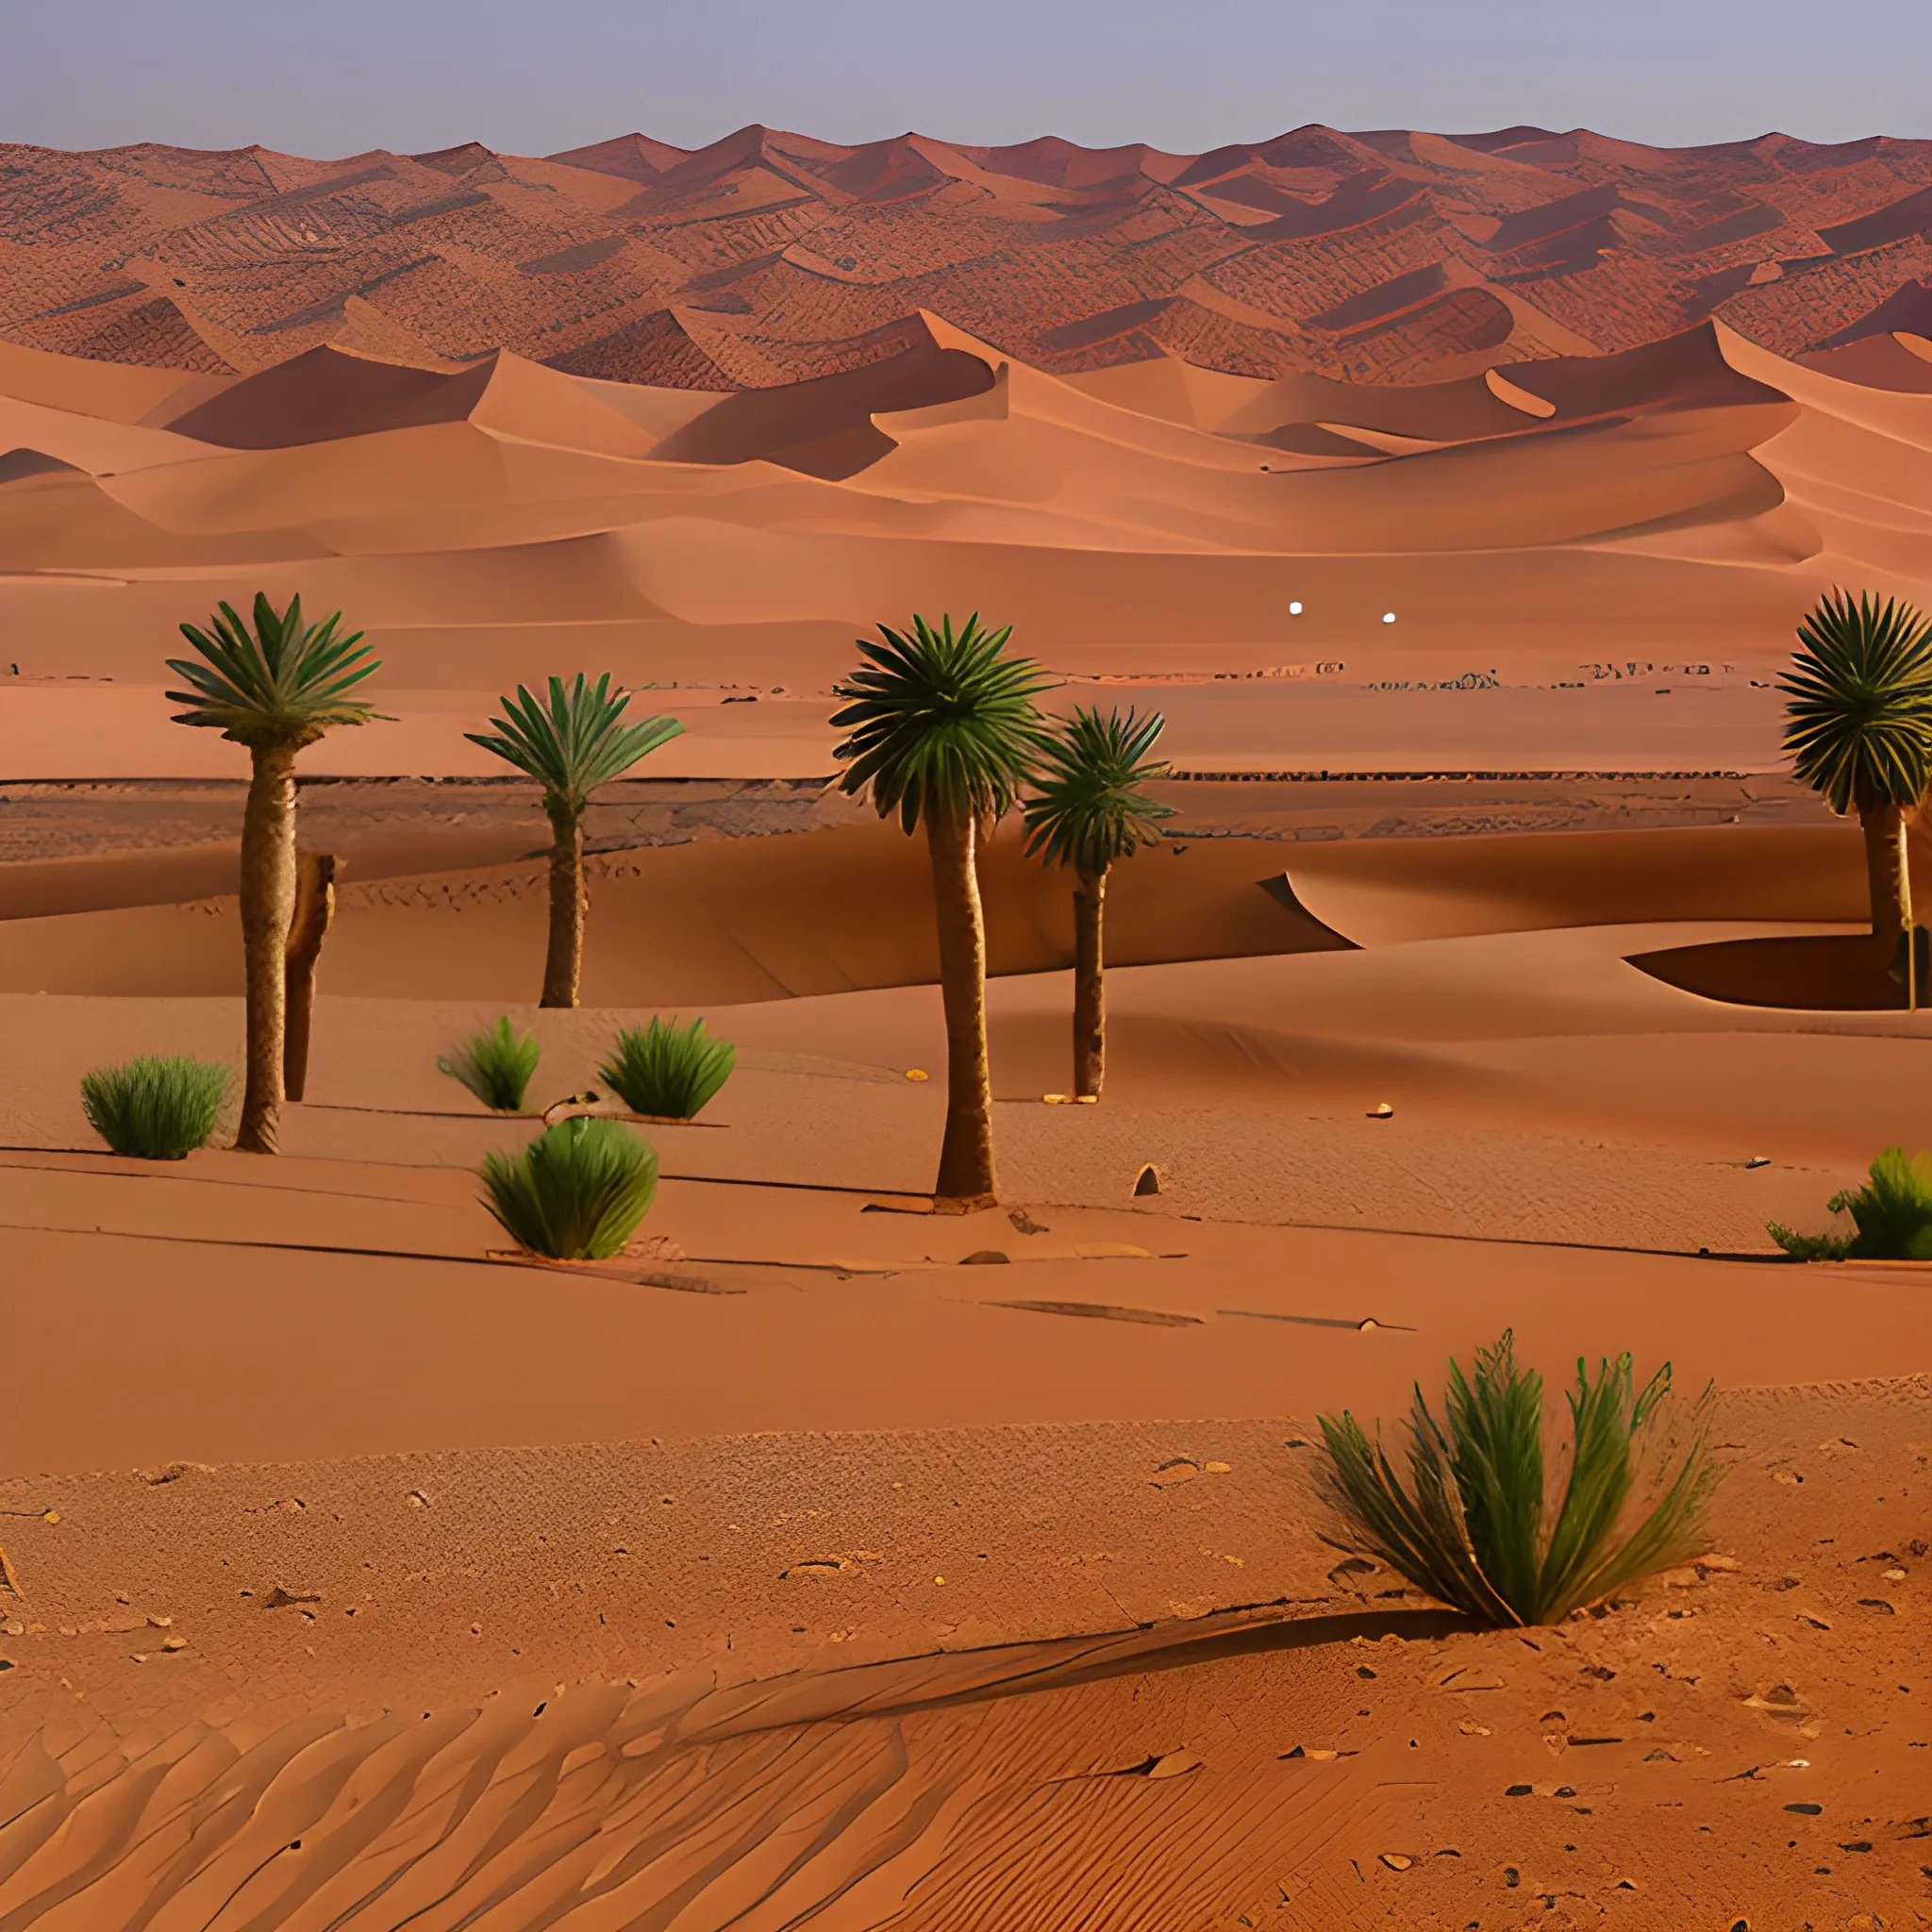 islamique
desert
Morocco
